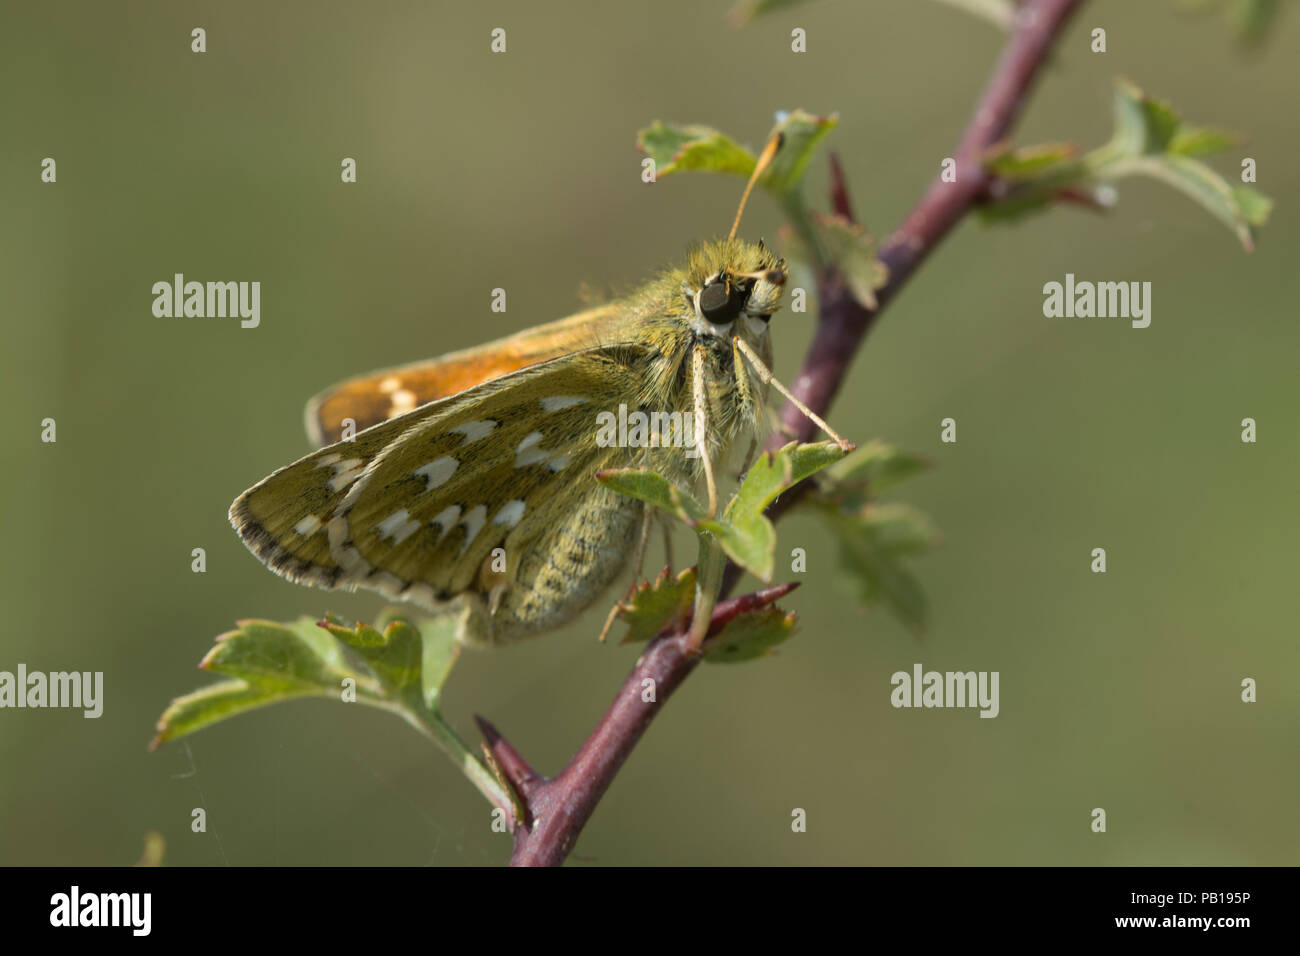 Silber getupft skipper Schmetterling (Hesperia comma) ruht auf einem Strauch in Chalk downland Lebensraum, Großbritannien Stockfoto